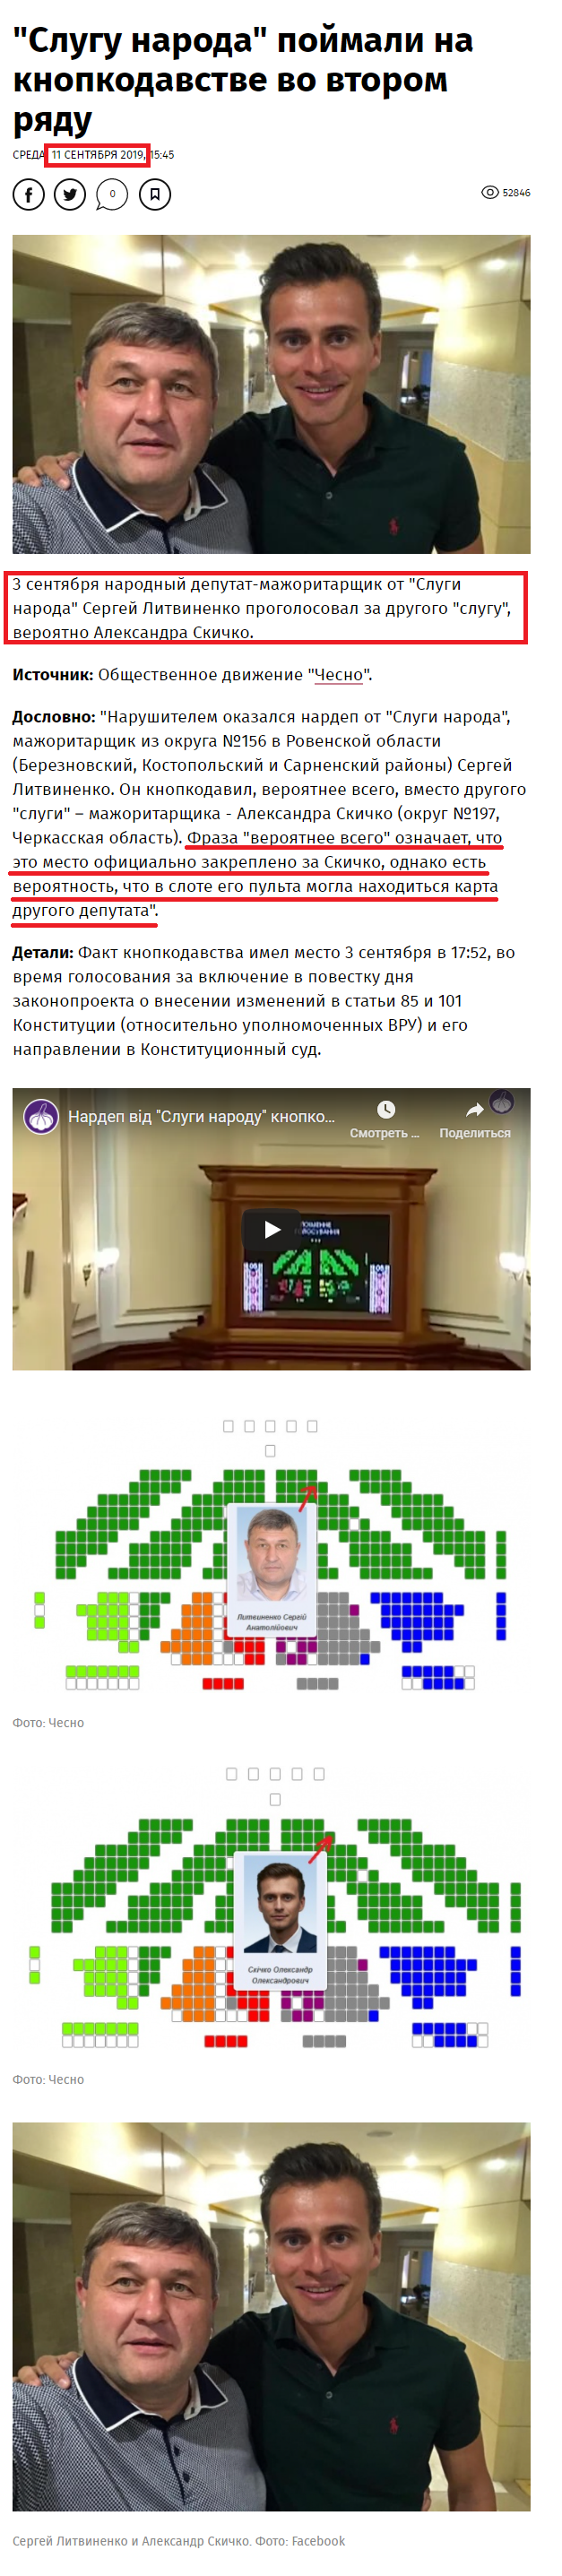 https://www.pravda.com.ua/news/2019/09/11/7225985/